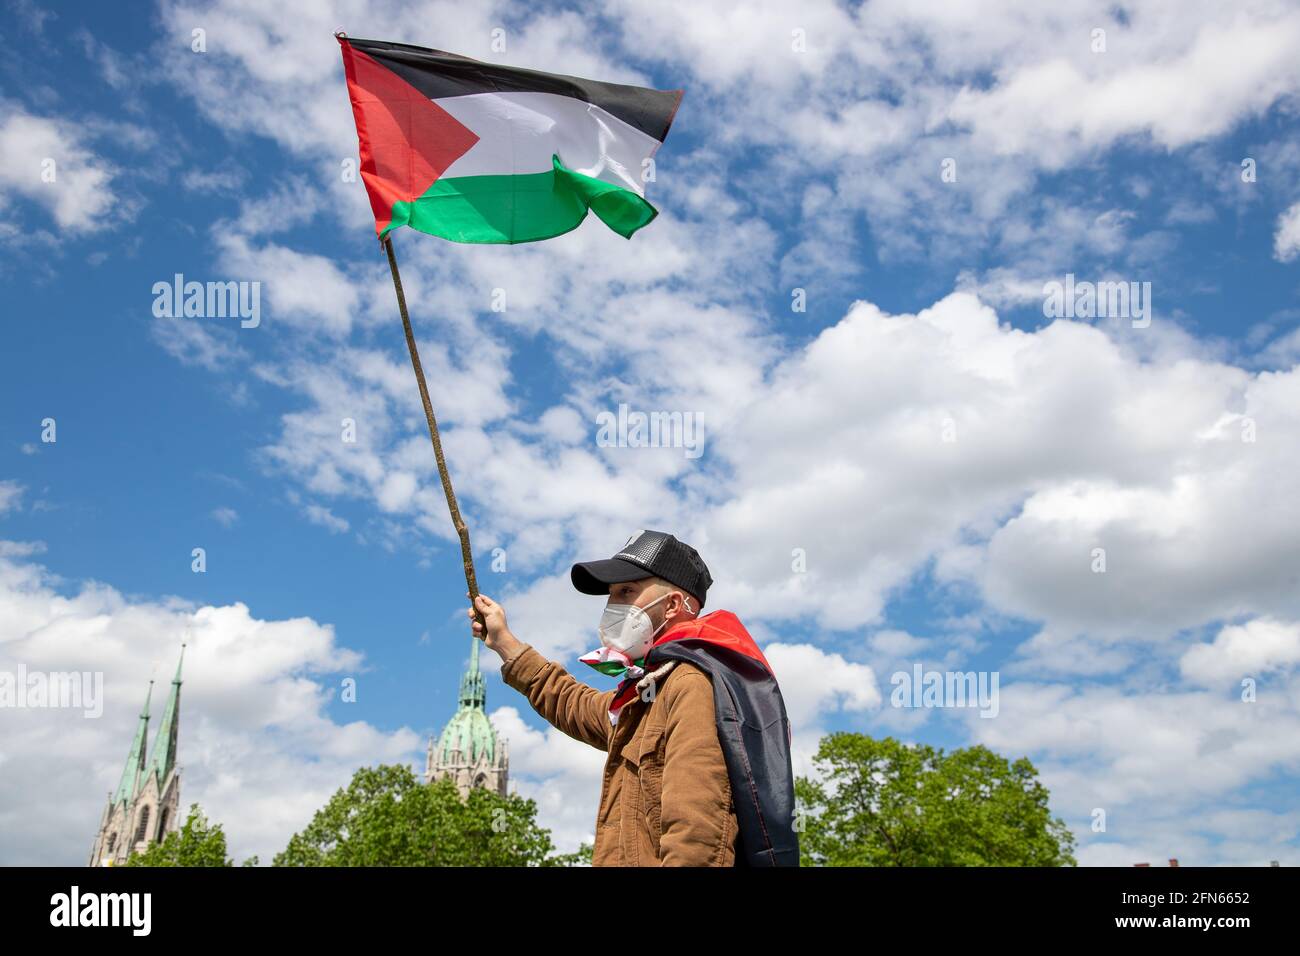 https://c8.alamy.com/compfr/2fn6652/demonstrant-halt-palastina-flagge-in-den-himmel-env-1000-menschen-versammelten-sich-am-14-mai-in-munchen-um-ihre-solidaritat-mit-den-palastinenser-innen-und-den-menschen-in-gaza-zu-zeigen-le-protstor-detient-le-drapeau-de-palestine-dans-le-ciel-environ-1000-personnes-se-sont-rassemblees-de-facon-spontanee-le-14-mai-2021-a-munich-en-allemagne-pour-montrer-leur-solidarite-avec-le-peuple-palestinien-et-le-peuple-de-gaza-photo-par-alexander-pohl-sipa-usa-credit-sipa-usa-alay-live-news-2fn6652.jpg